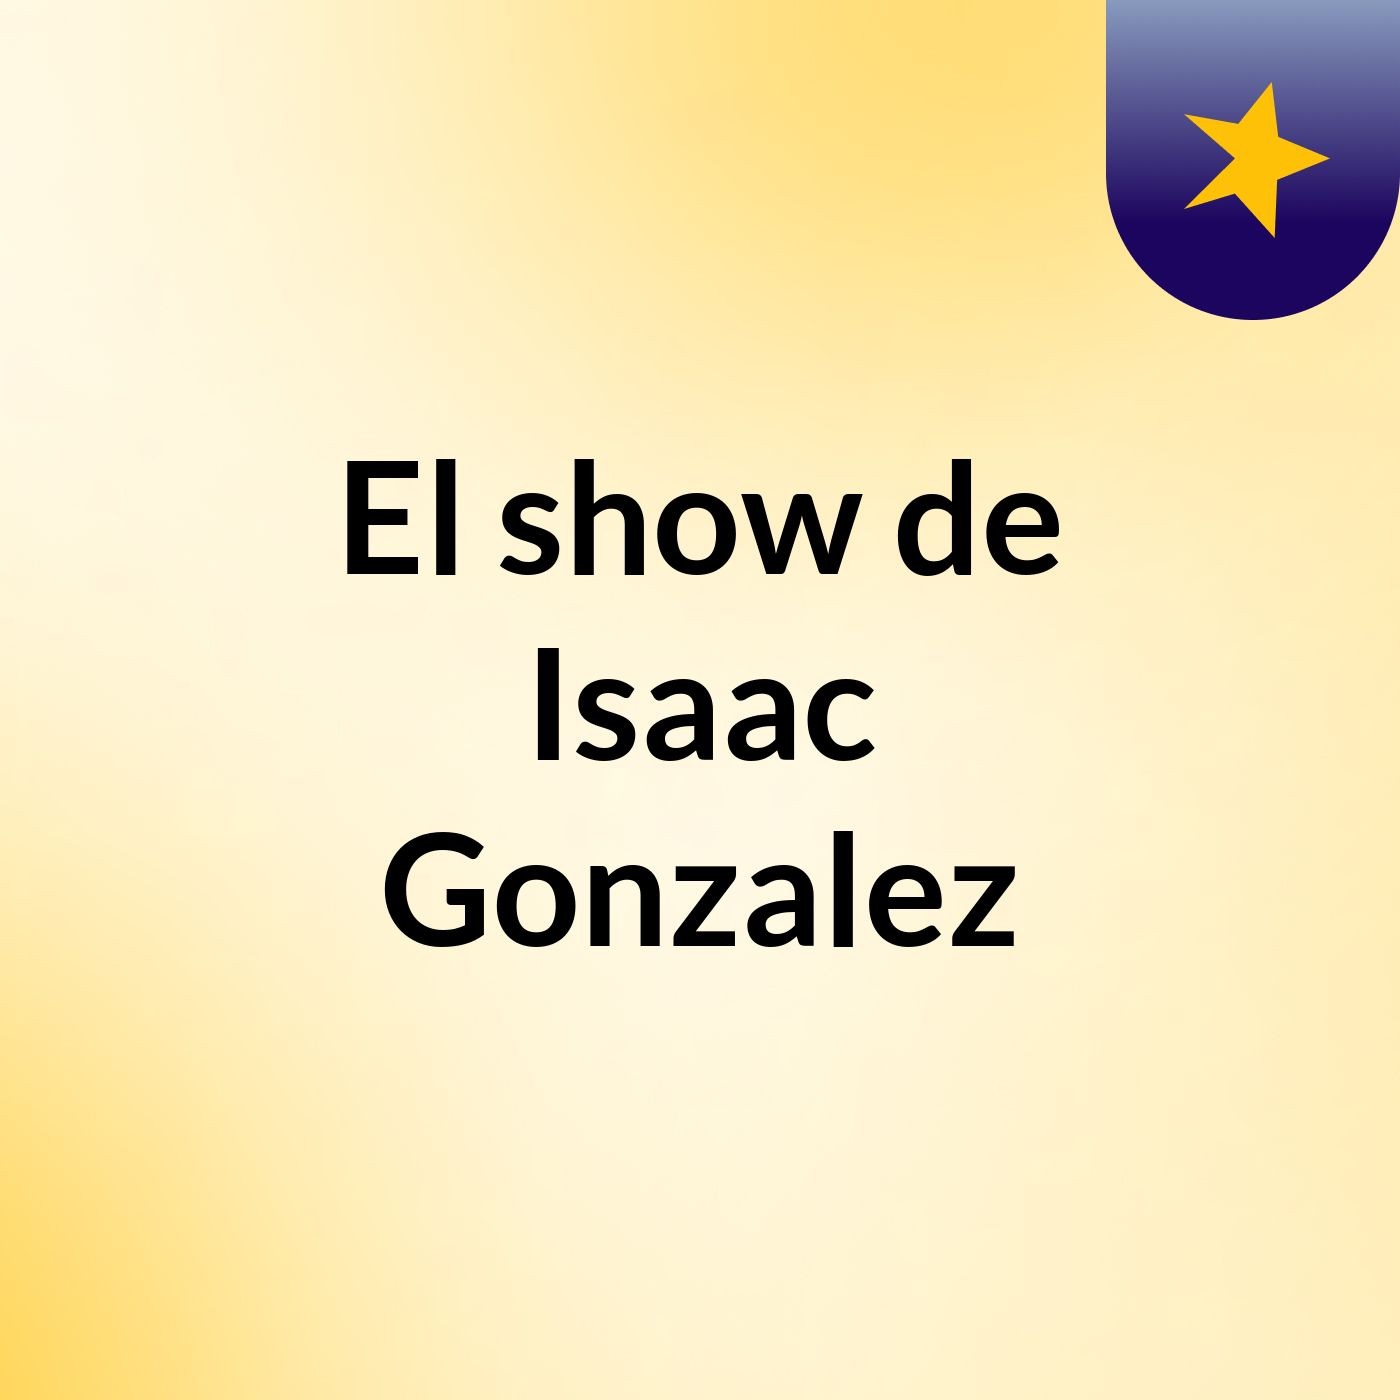 El show de Isaac Gonzalez